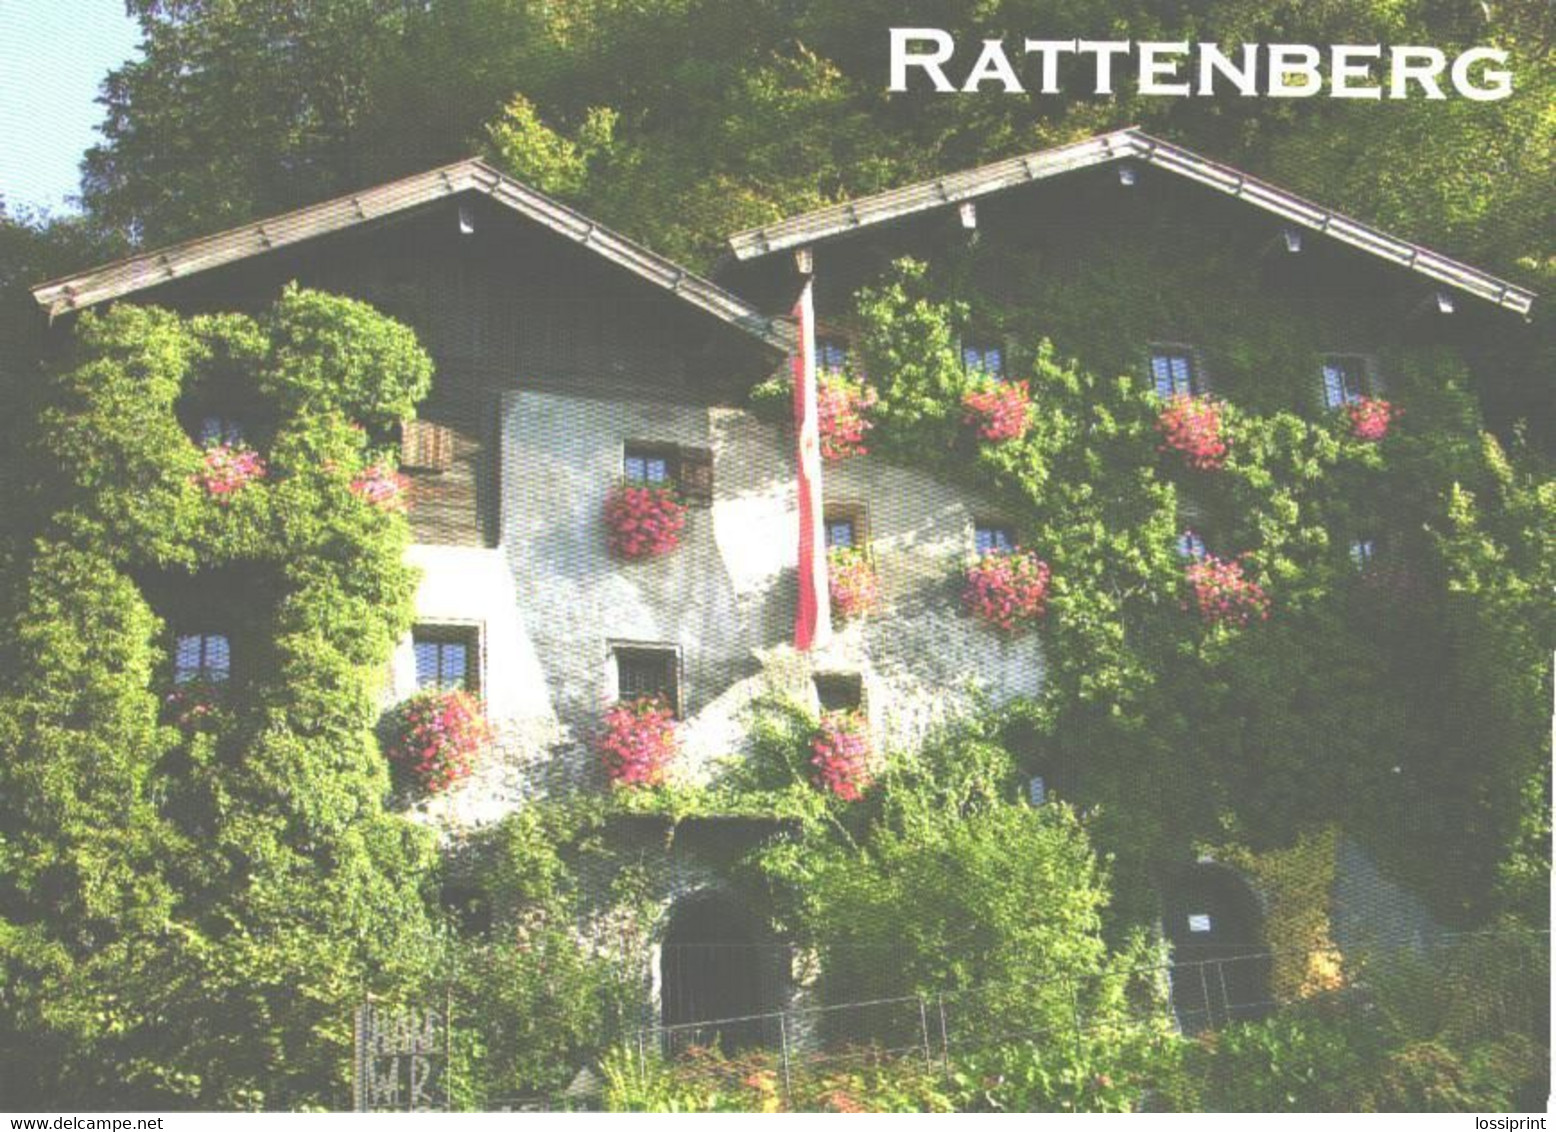 Austria:Rattenberg Am Inn, Nagelschmied Houses - Rattenberg